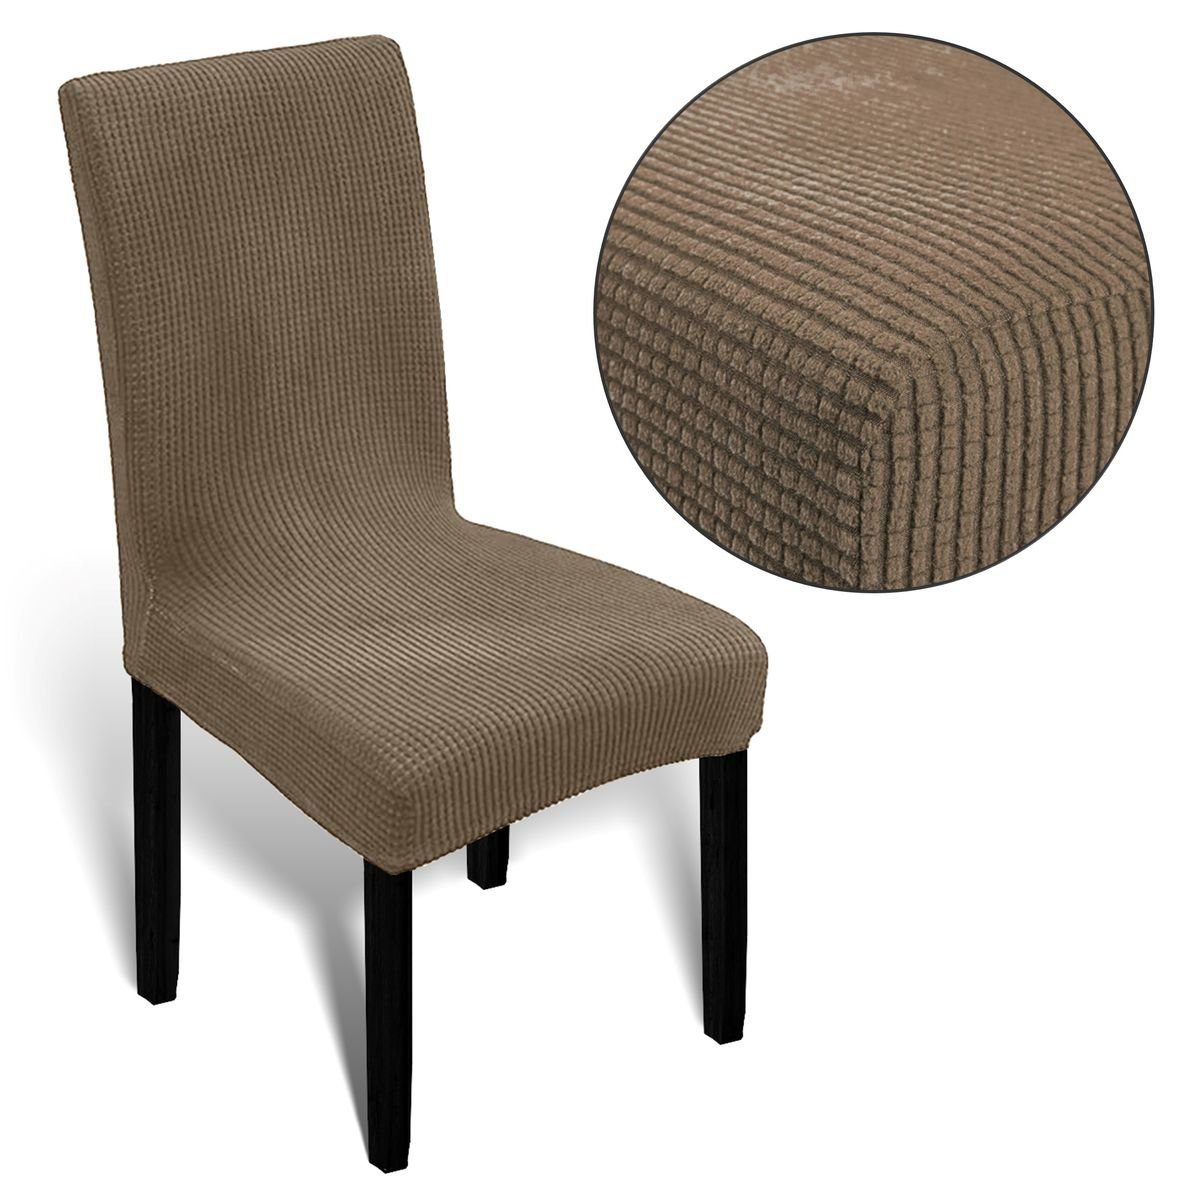 Stretch Muster, Spannbezug, Stuhlhusse elastisch Stuhlüberzug dezentem Stuhlbezug Universal Melody, mit kaffee weich